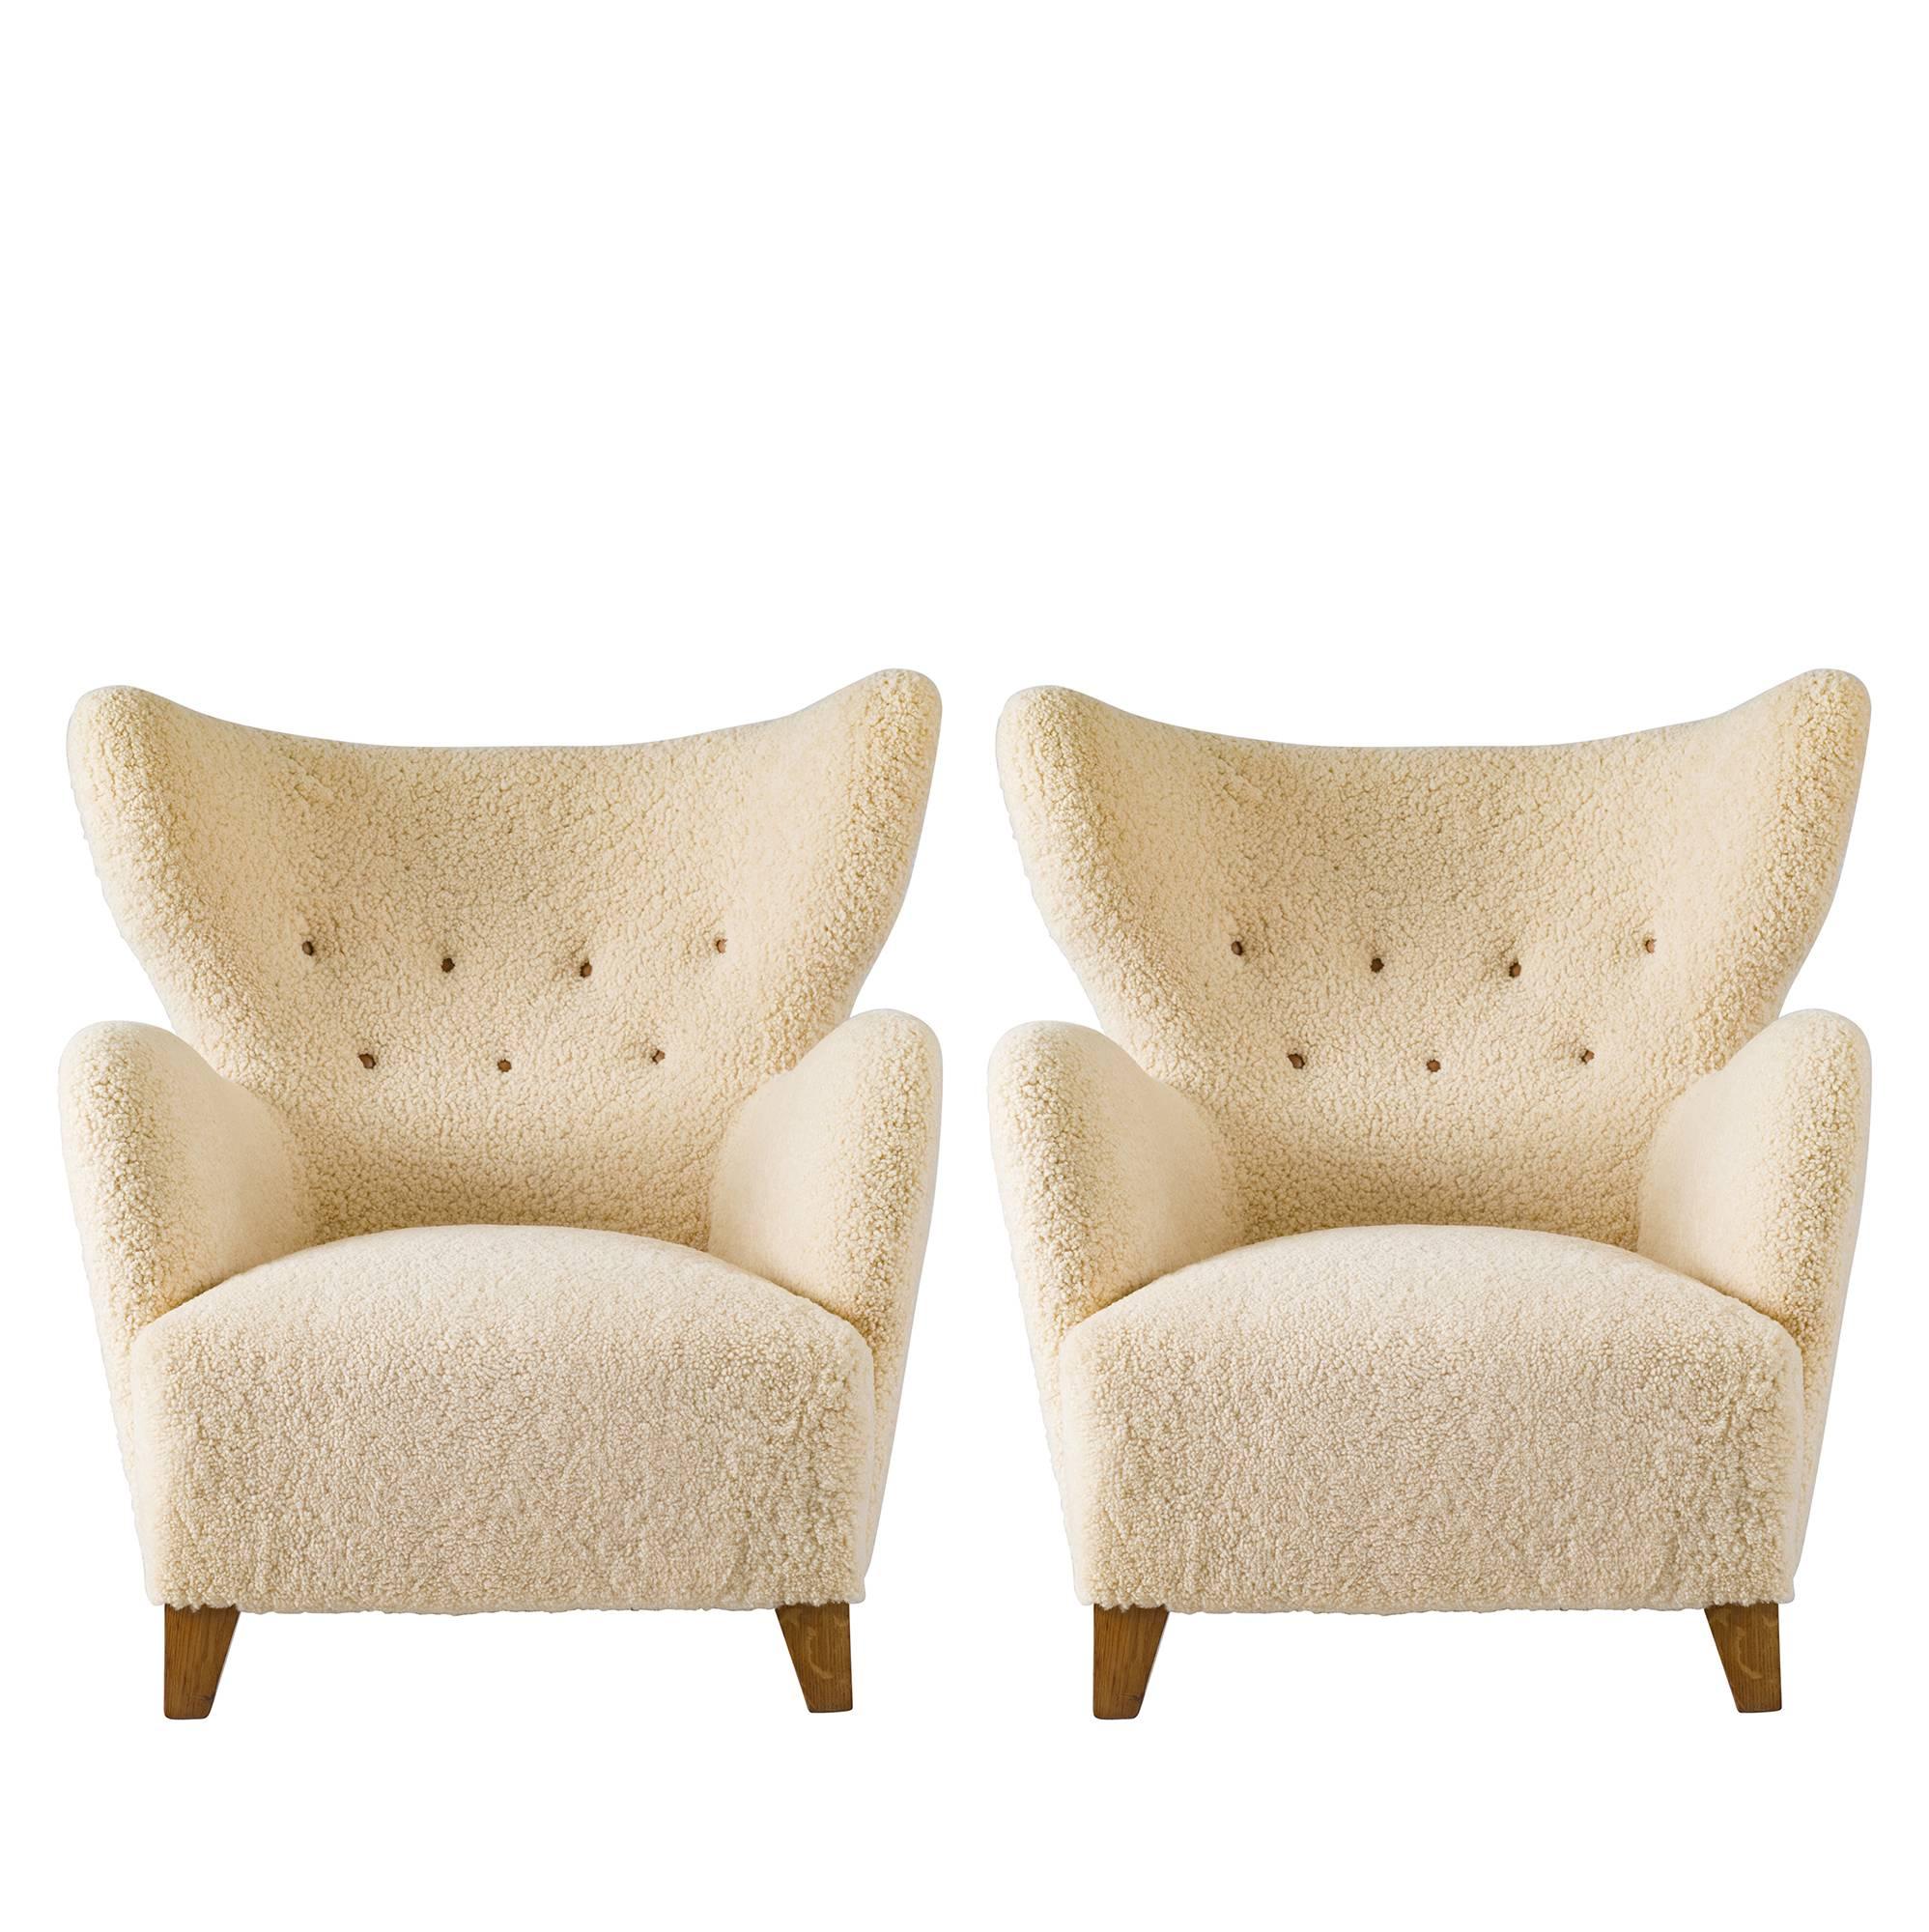  Scandinavian Sheepskin Lounge Chair